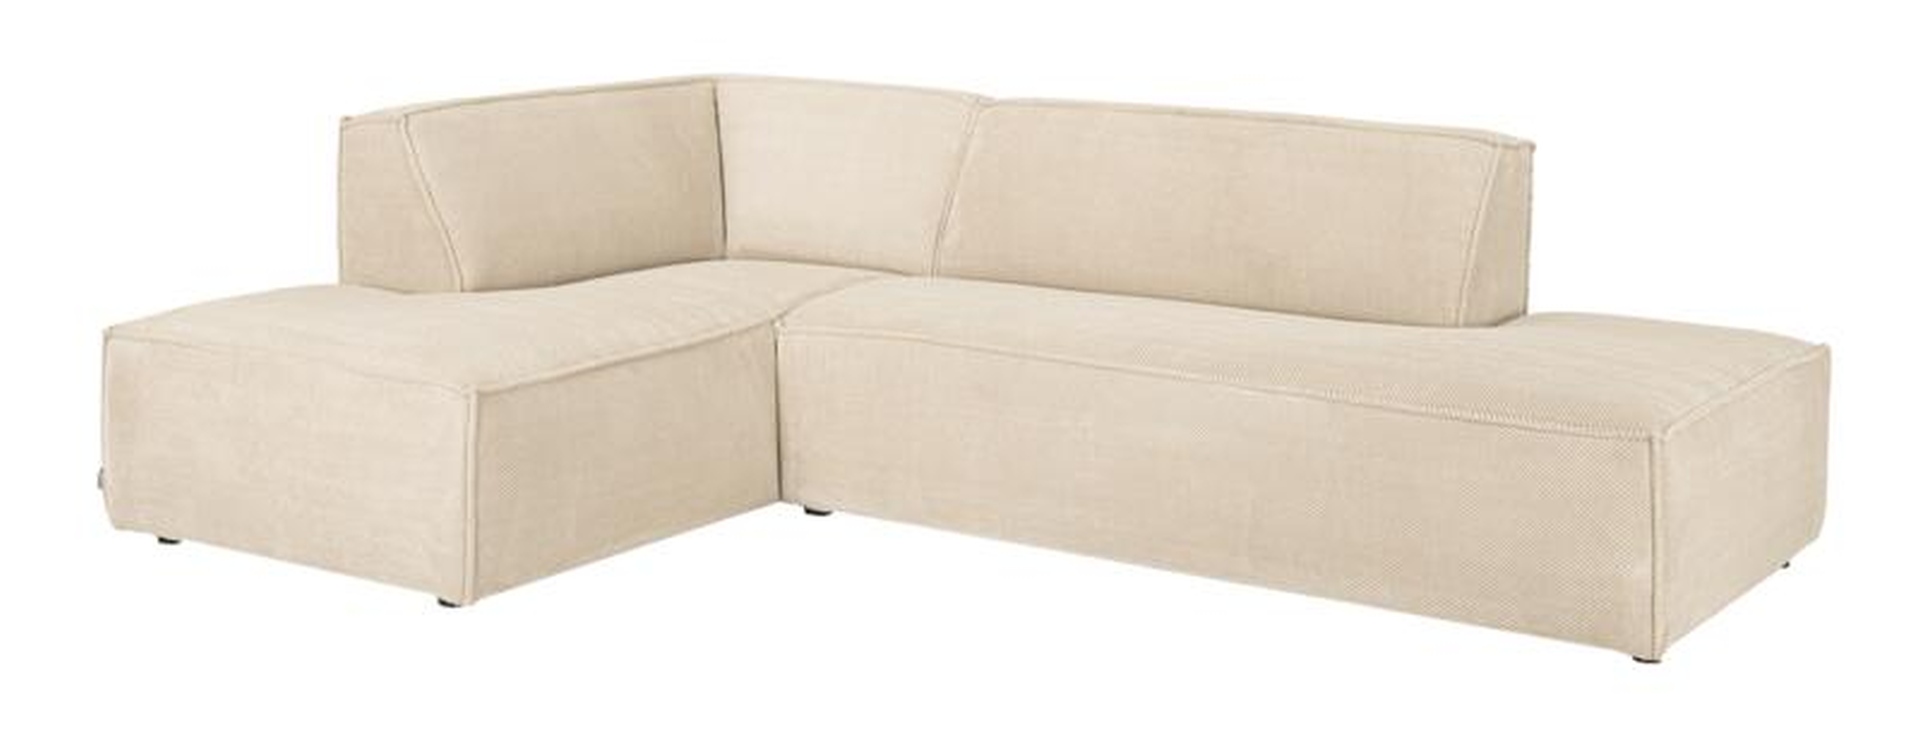 Das Ecksofa Cliff wurde aus weichem Stoff gefertigt, welcher einen Beigen Farbton besitzt. Das Sofa überzeugt mit seinem modernem Design. Diese Variante hat die Ausführung Links.